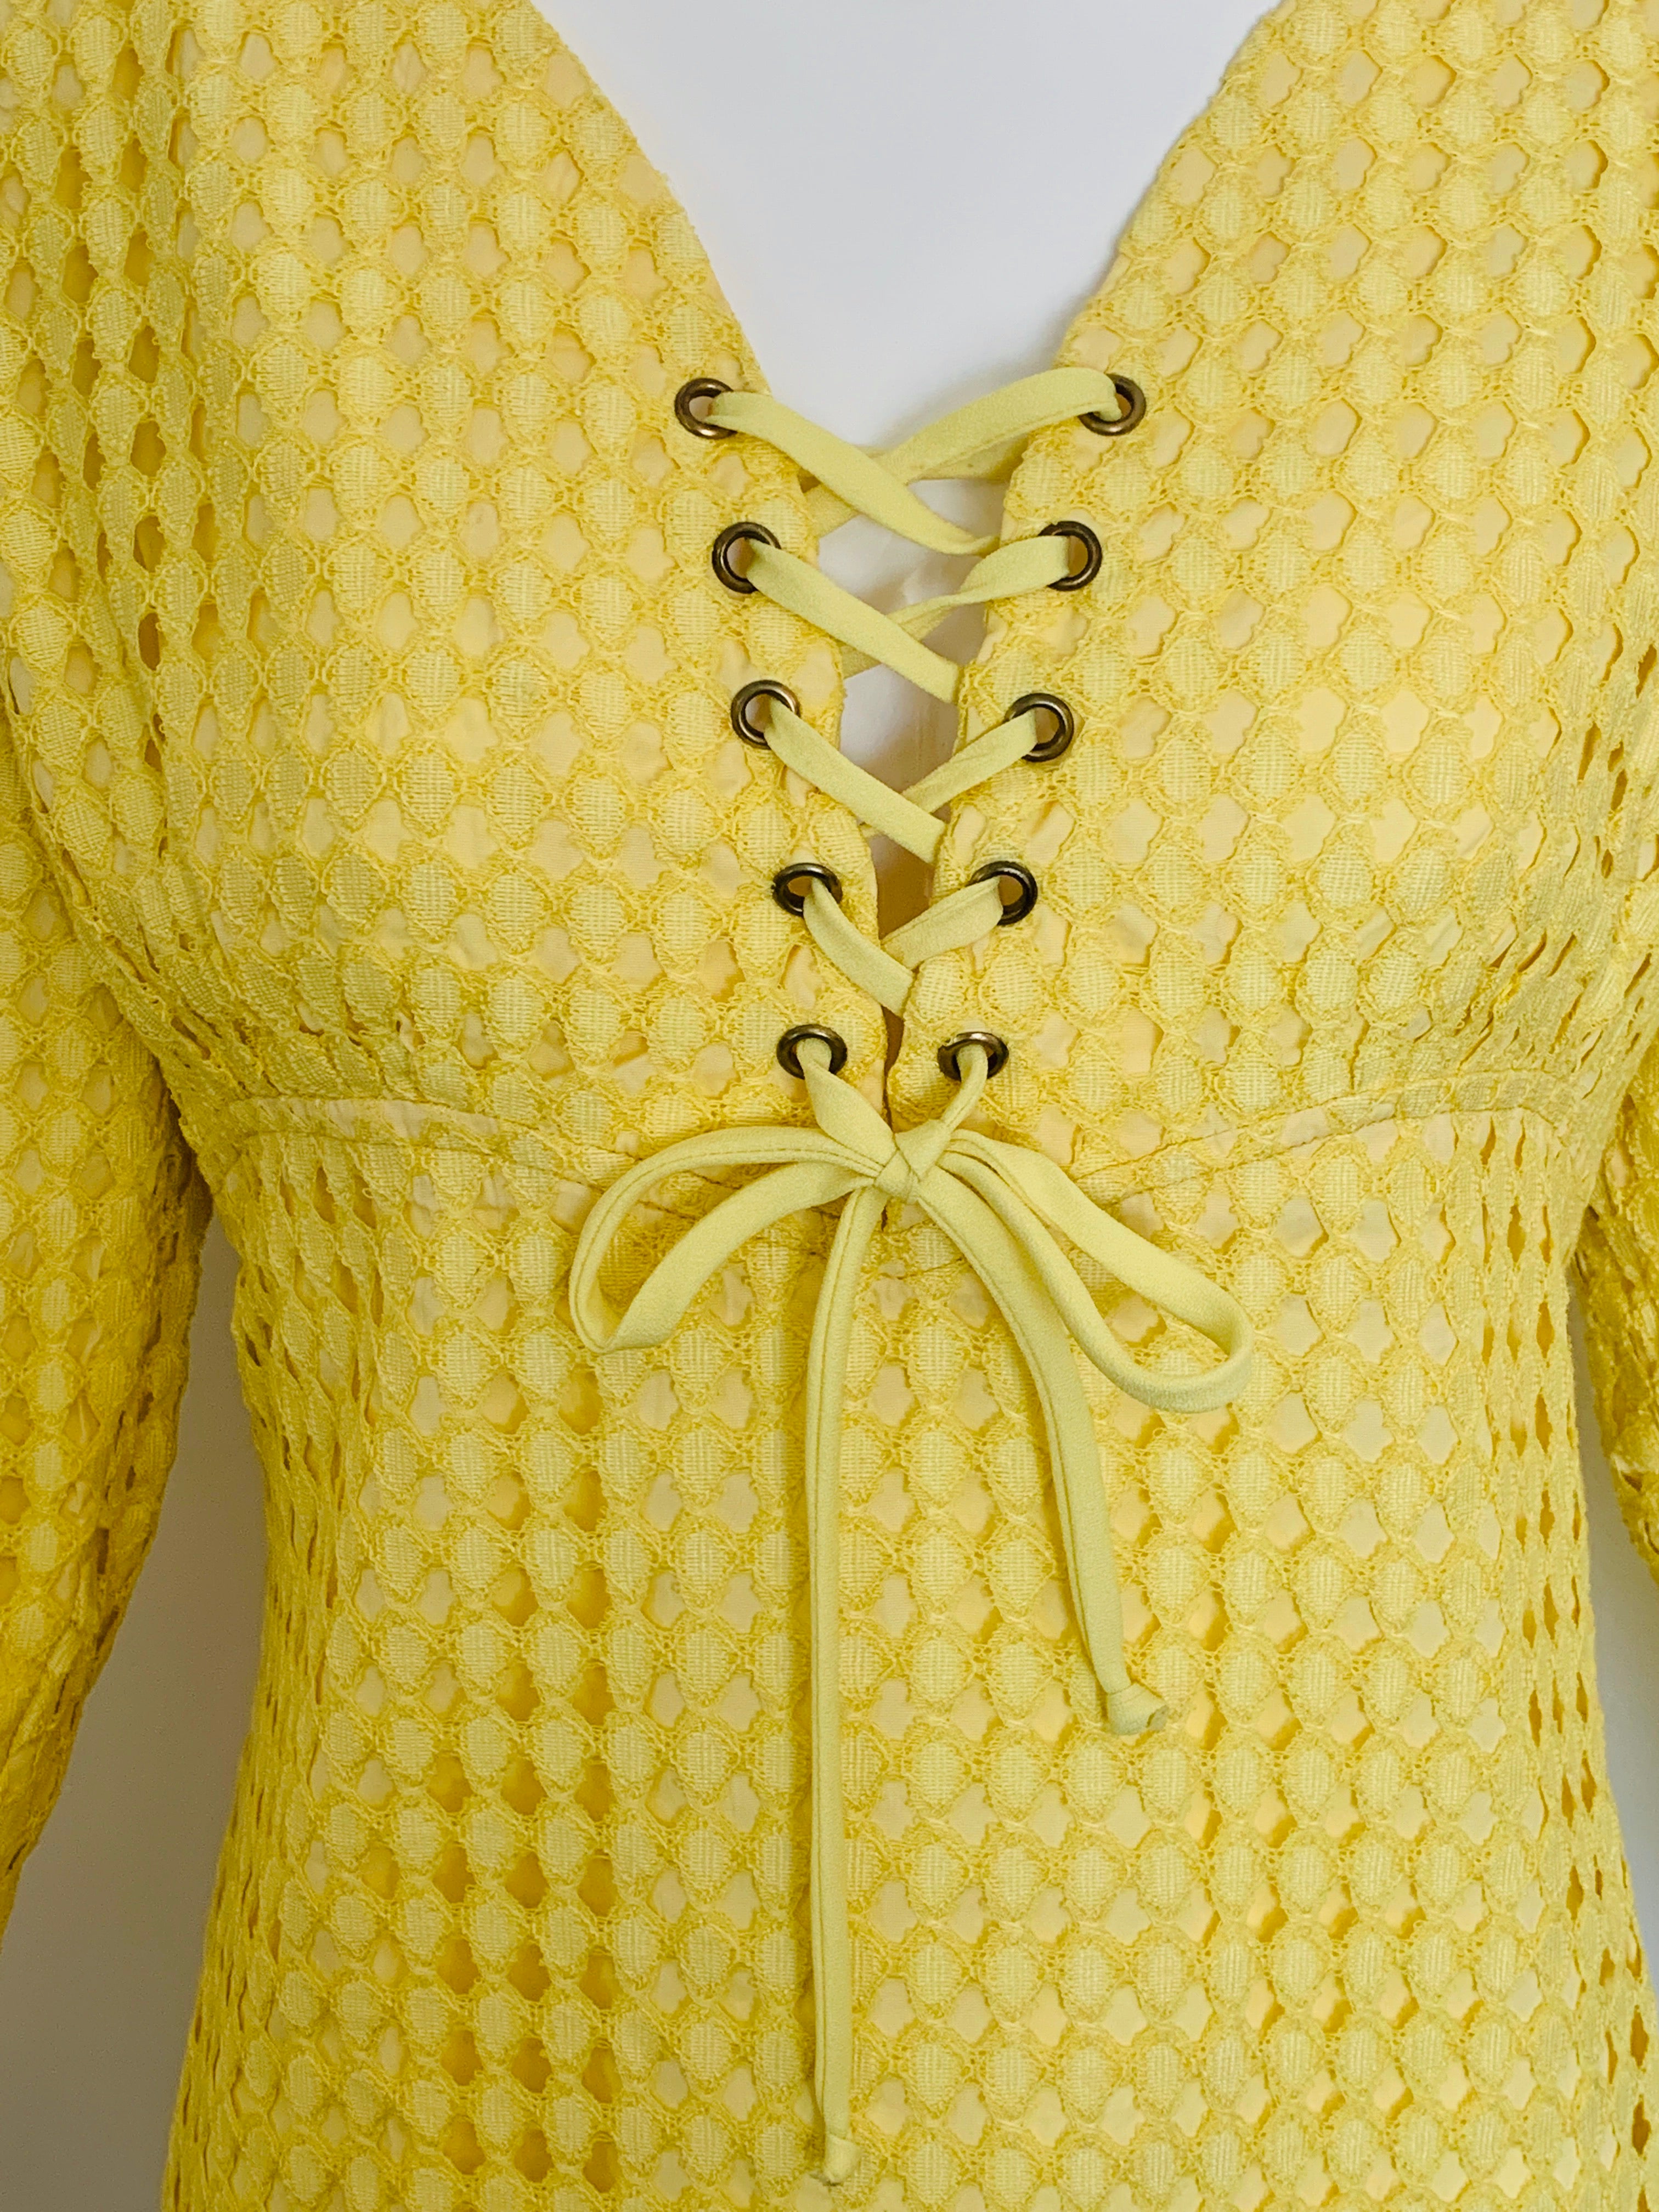 60s Lace Up Yellow Mini Dress